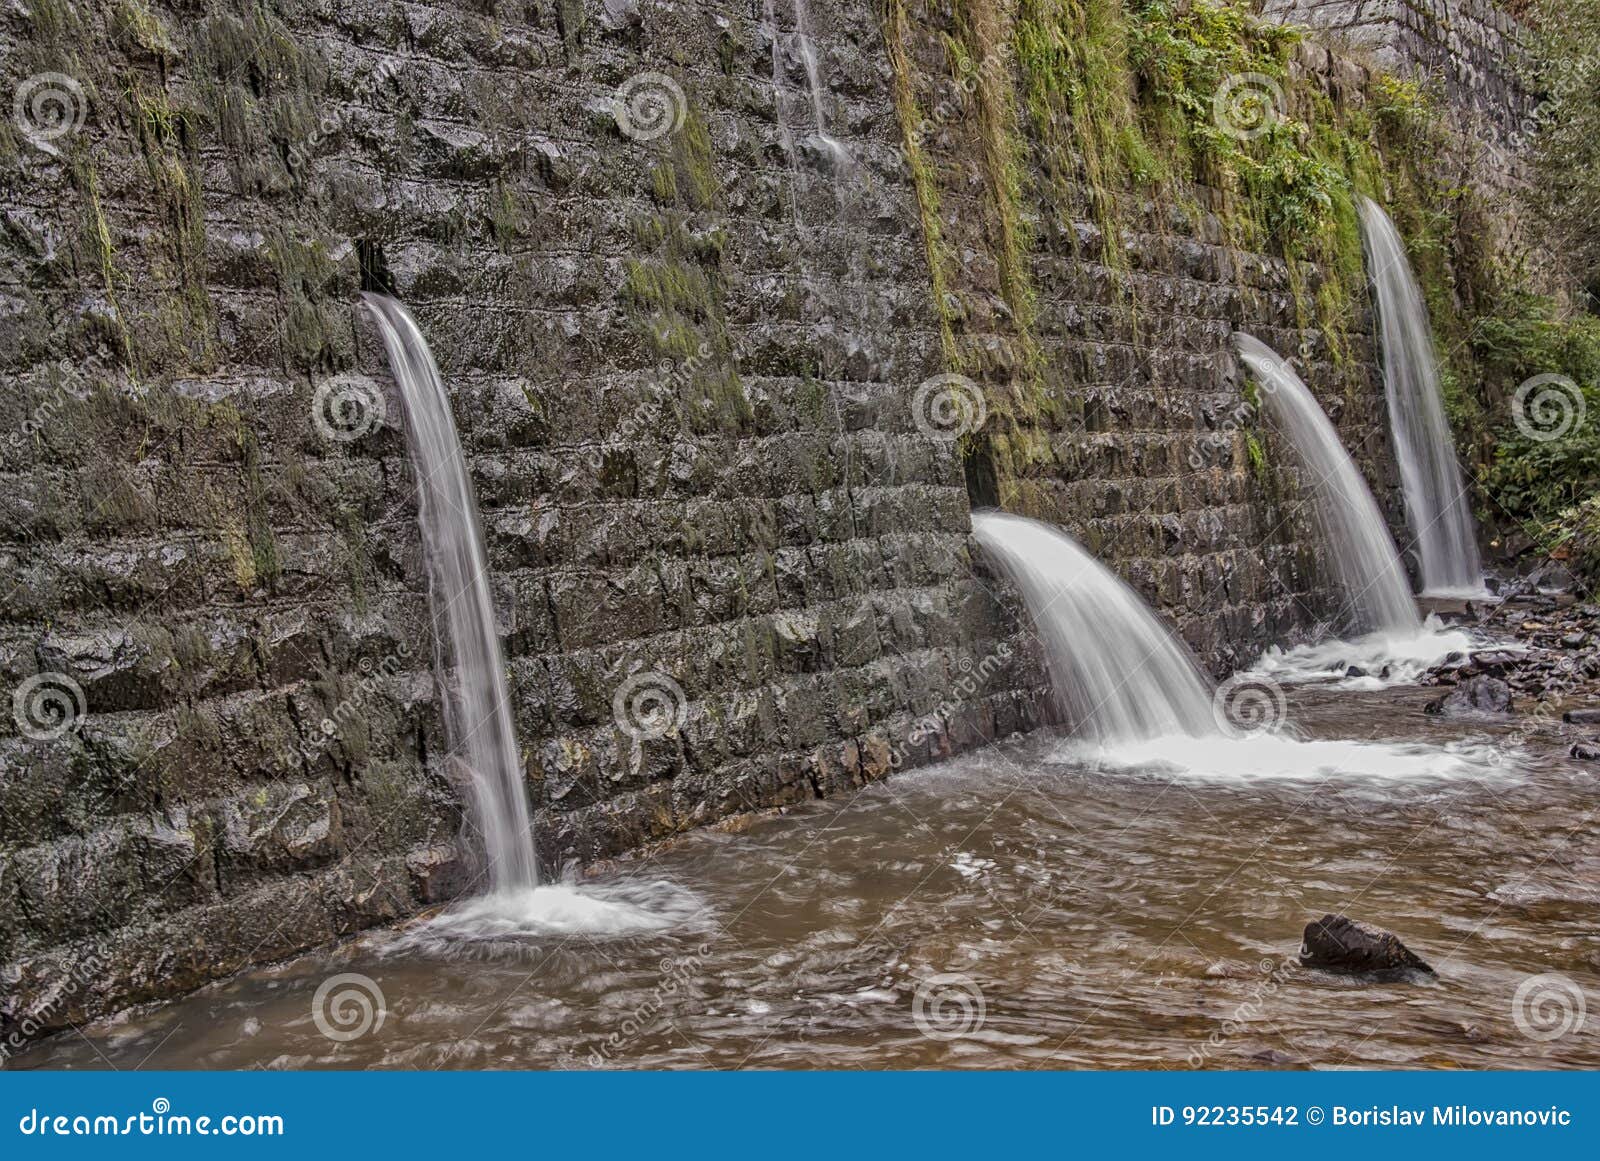 Concrete Waterfalls, Concrete Water Slides